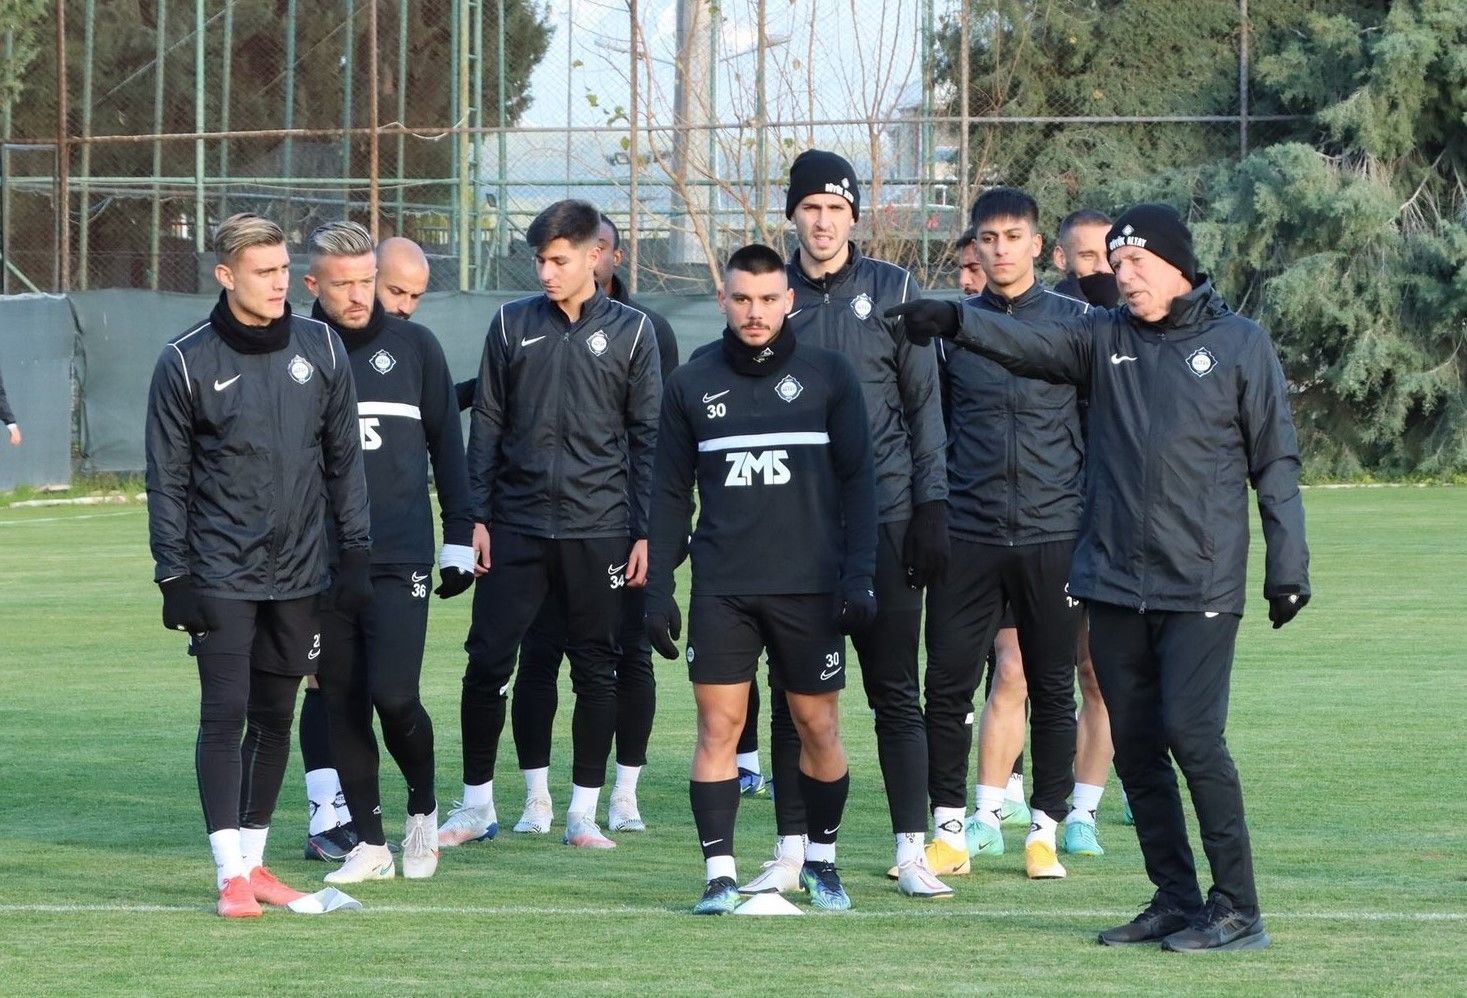 Касымпаша – Алтай прогноз 25 декабря: ставки и коэффициенты на матч чемпионата Турции